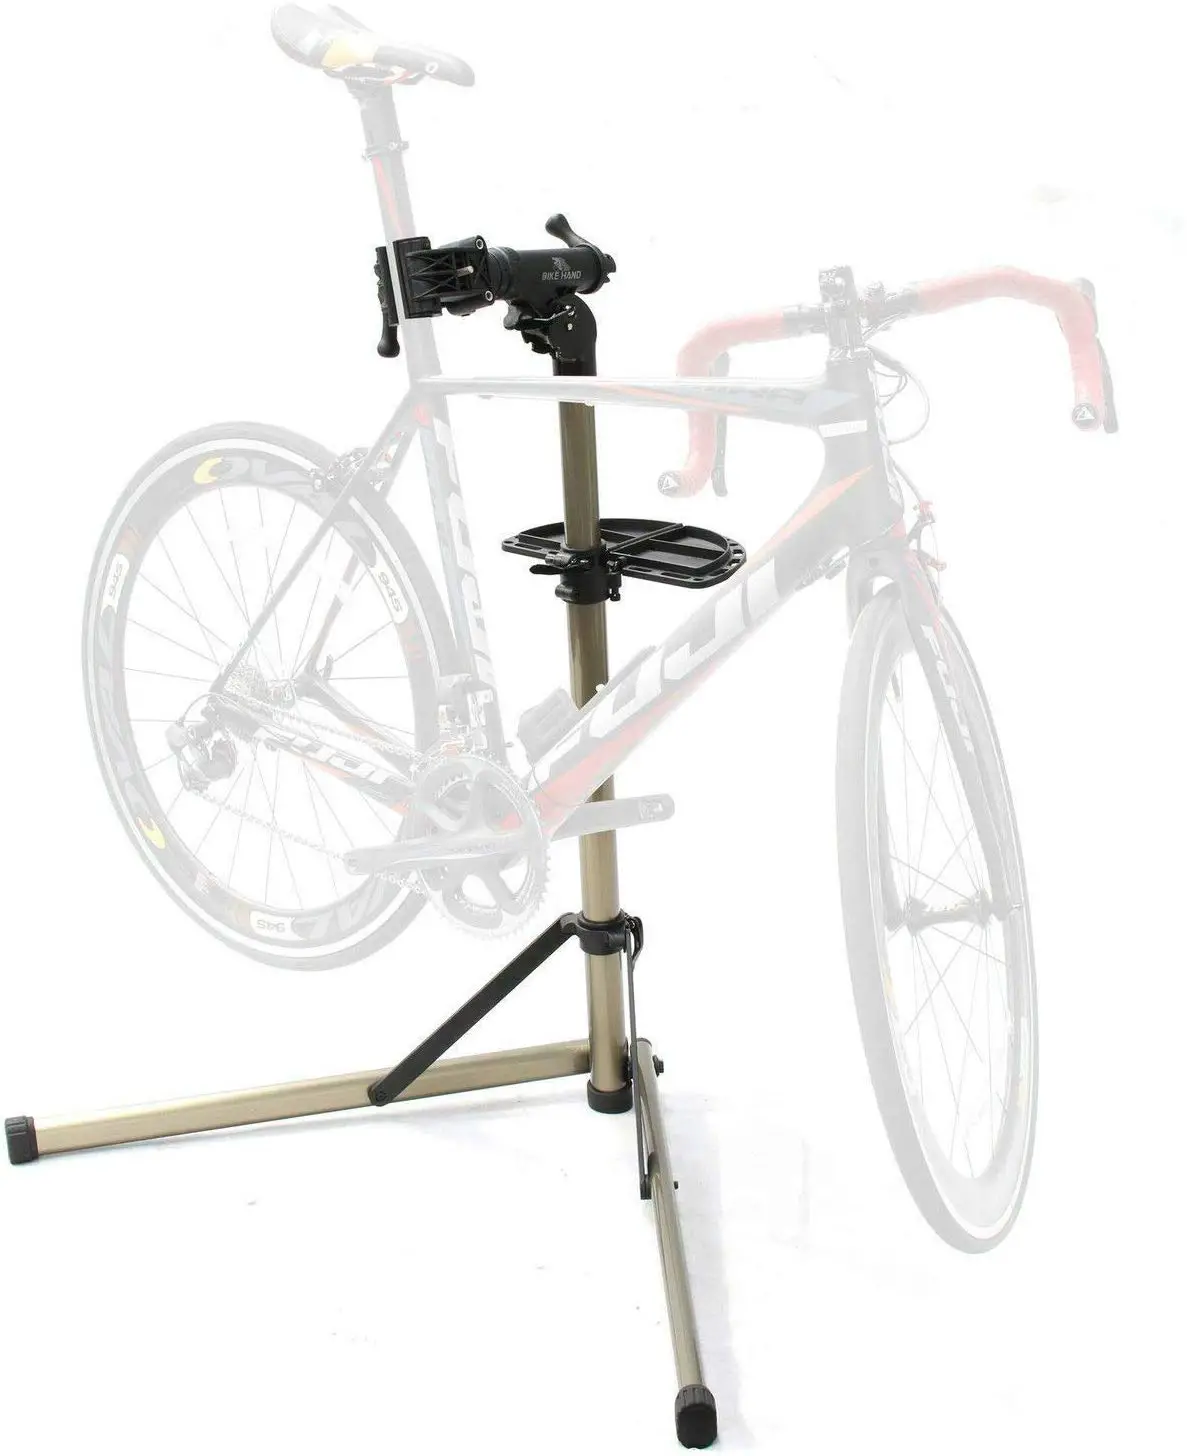 2. Bike Hand Bike Stand